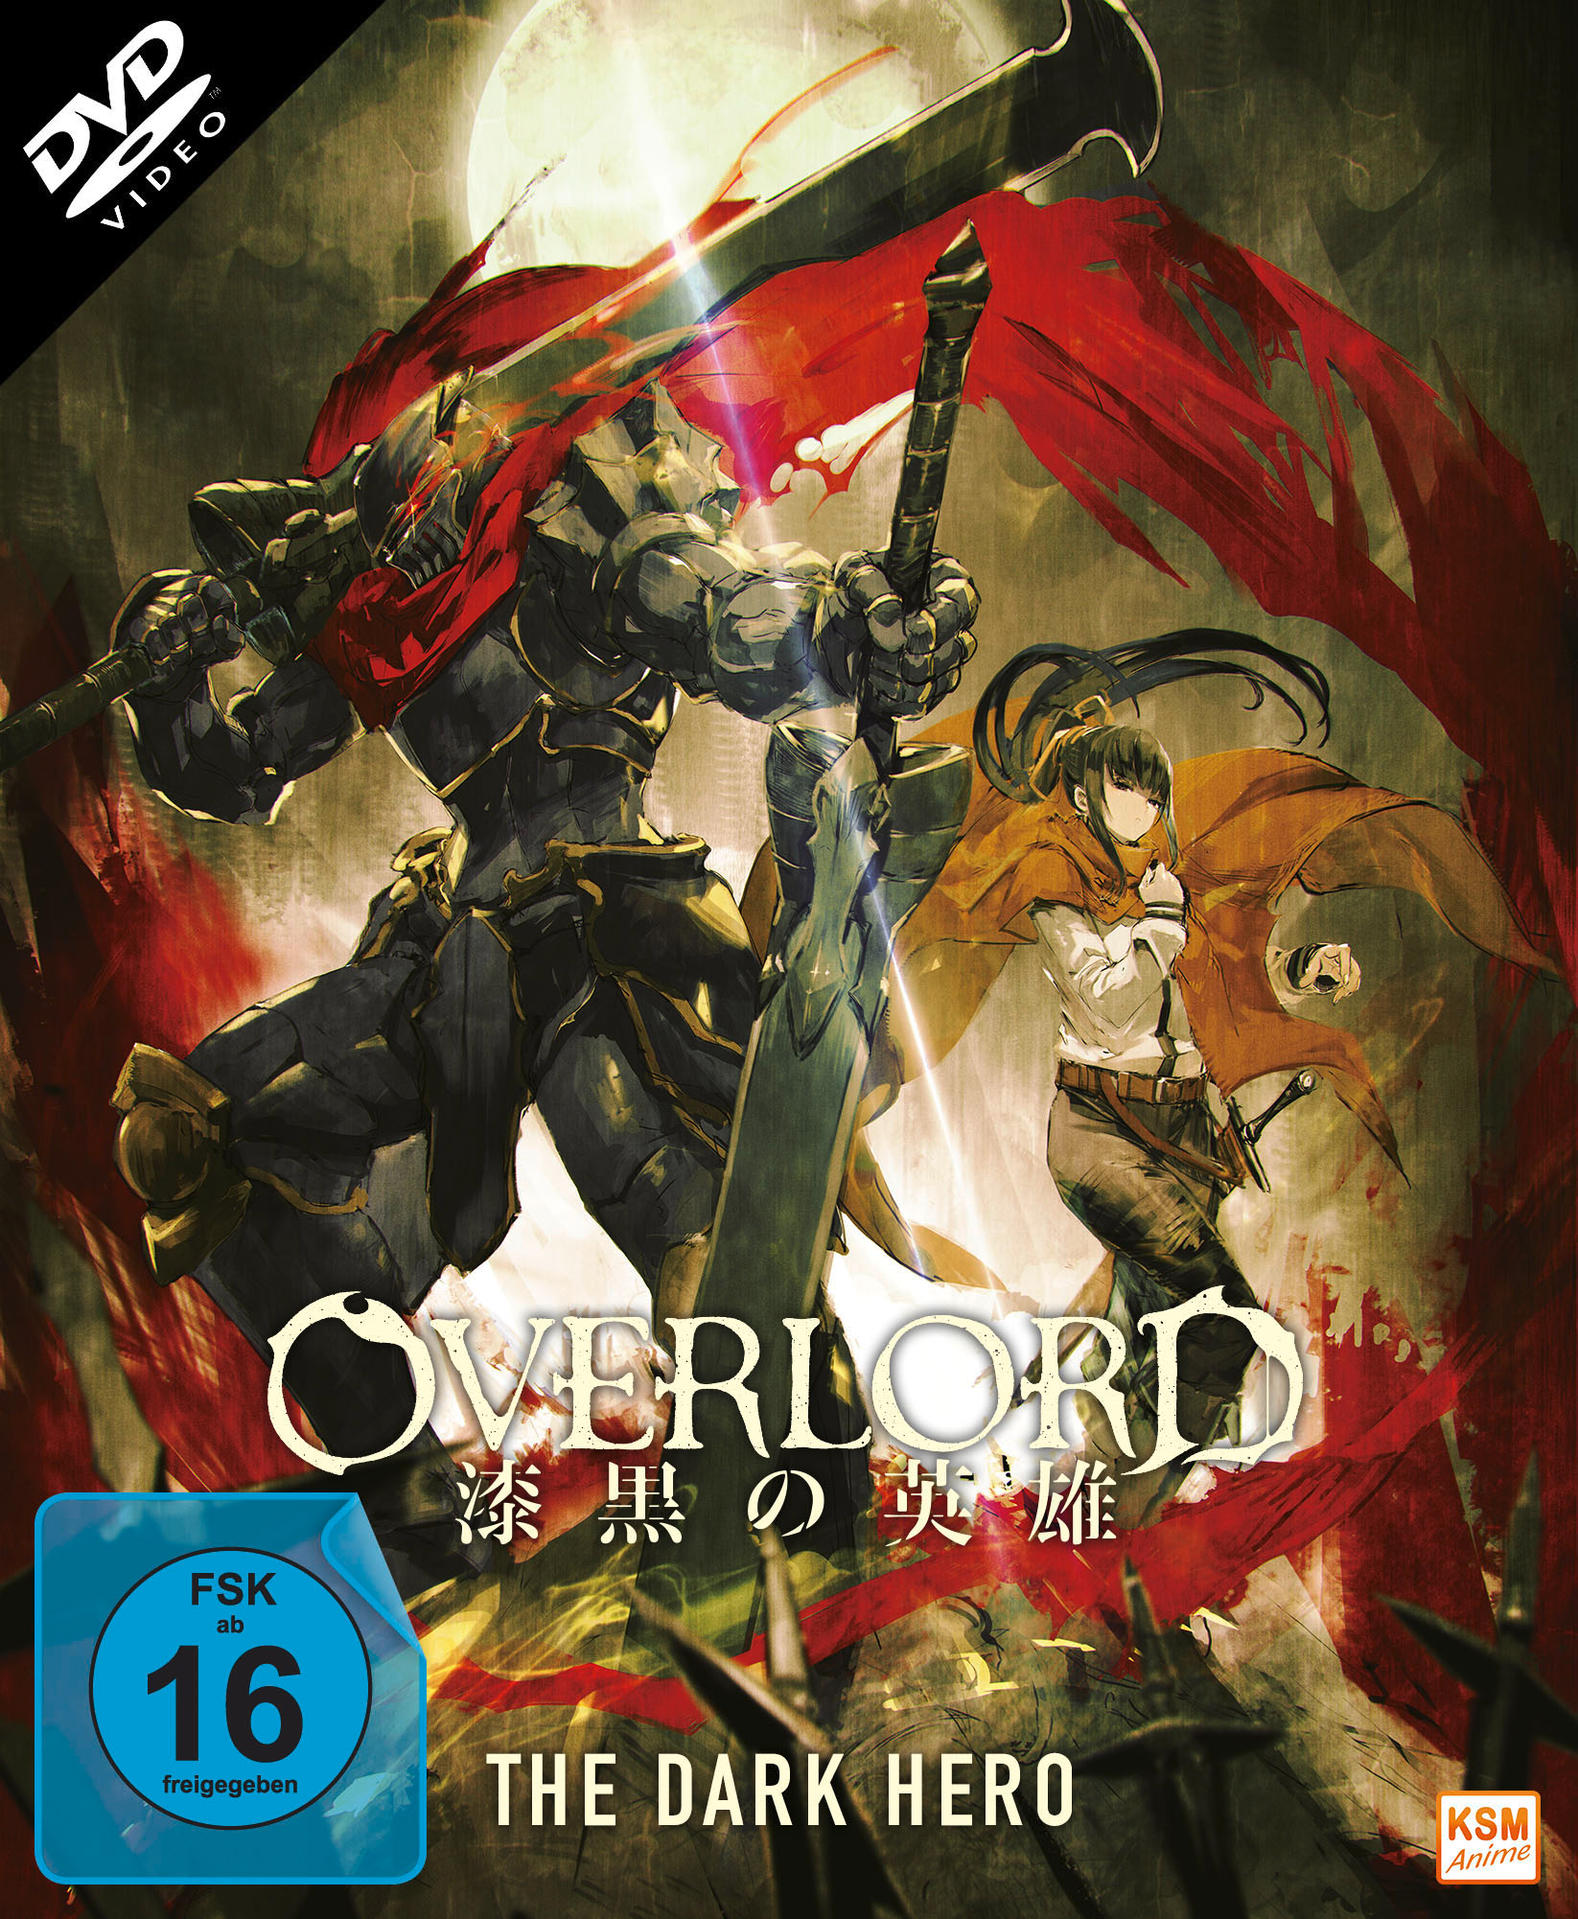 Overlord DVD Hero - The Dark